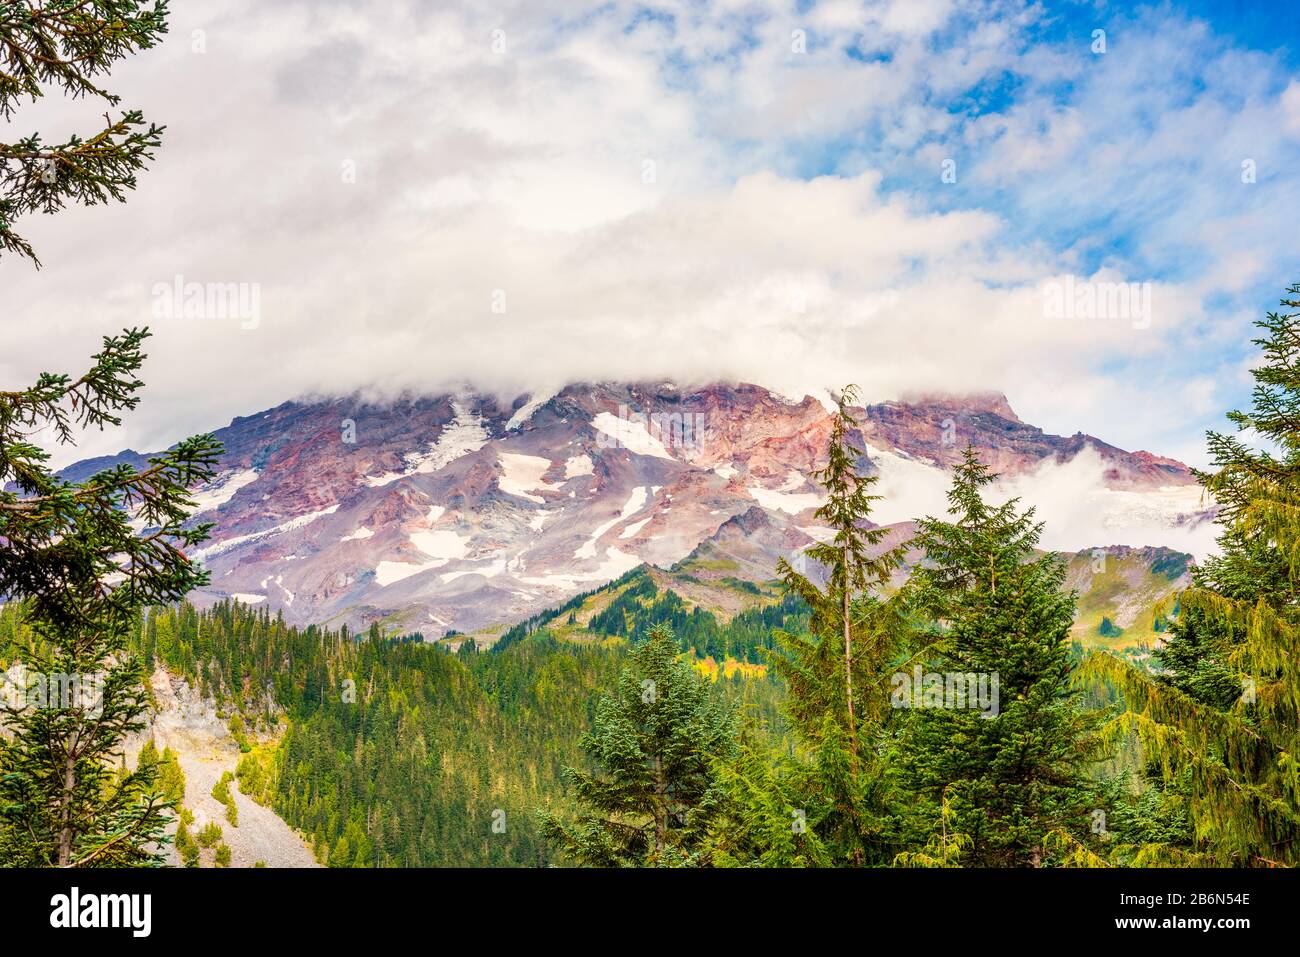 View on Mount Rainier in Mount Rainier National Park, Washington, USA Stock Photo